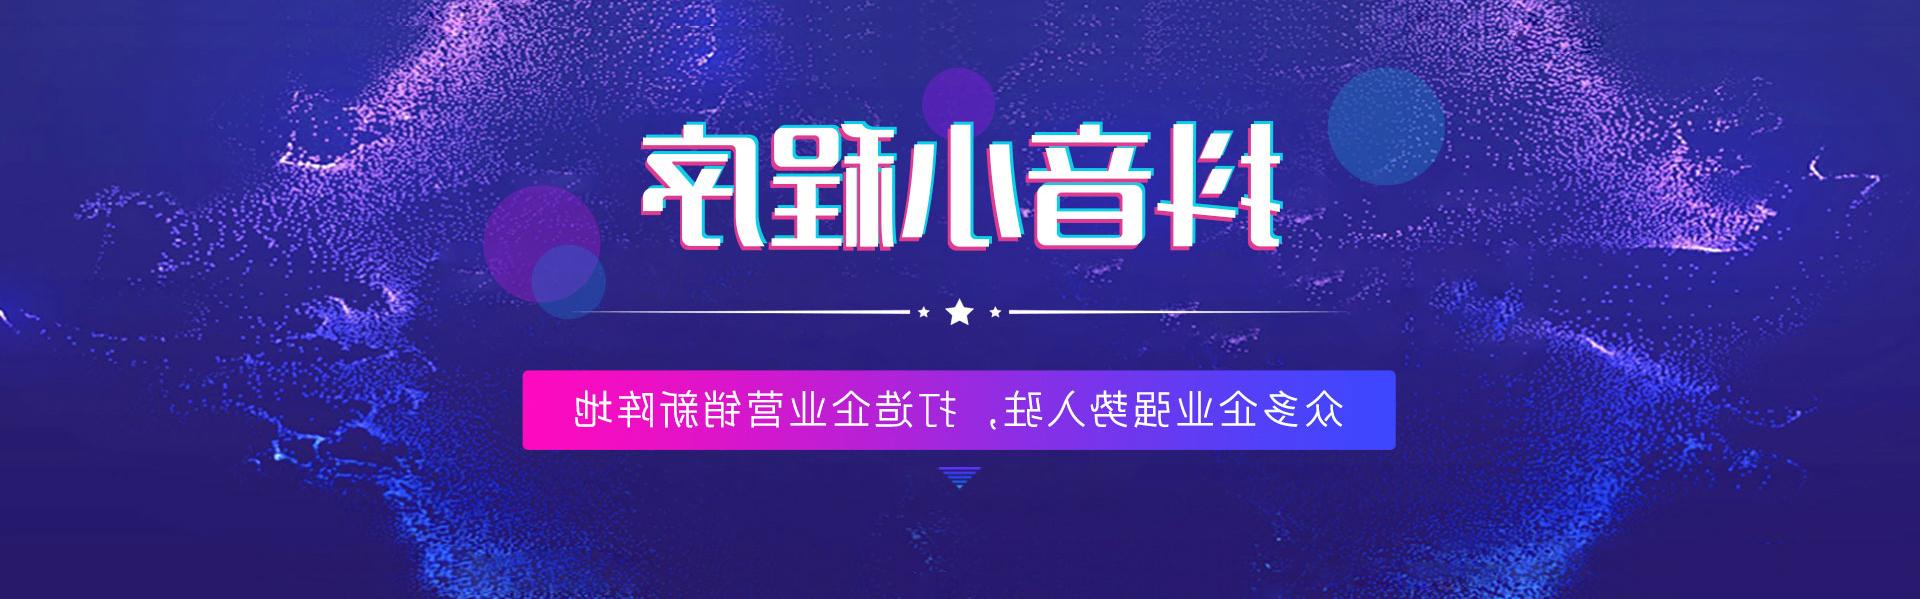 蚌埠抖音世界杯足彩app,打造企业营销新阵地